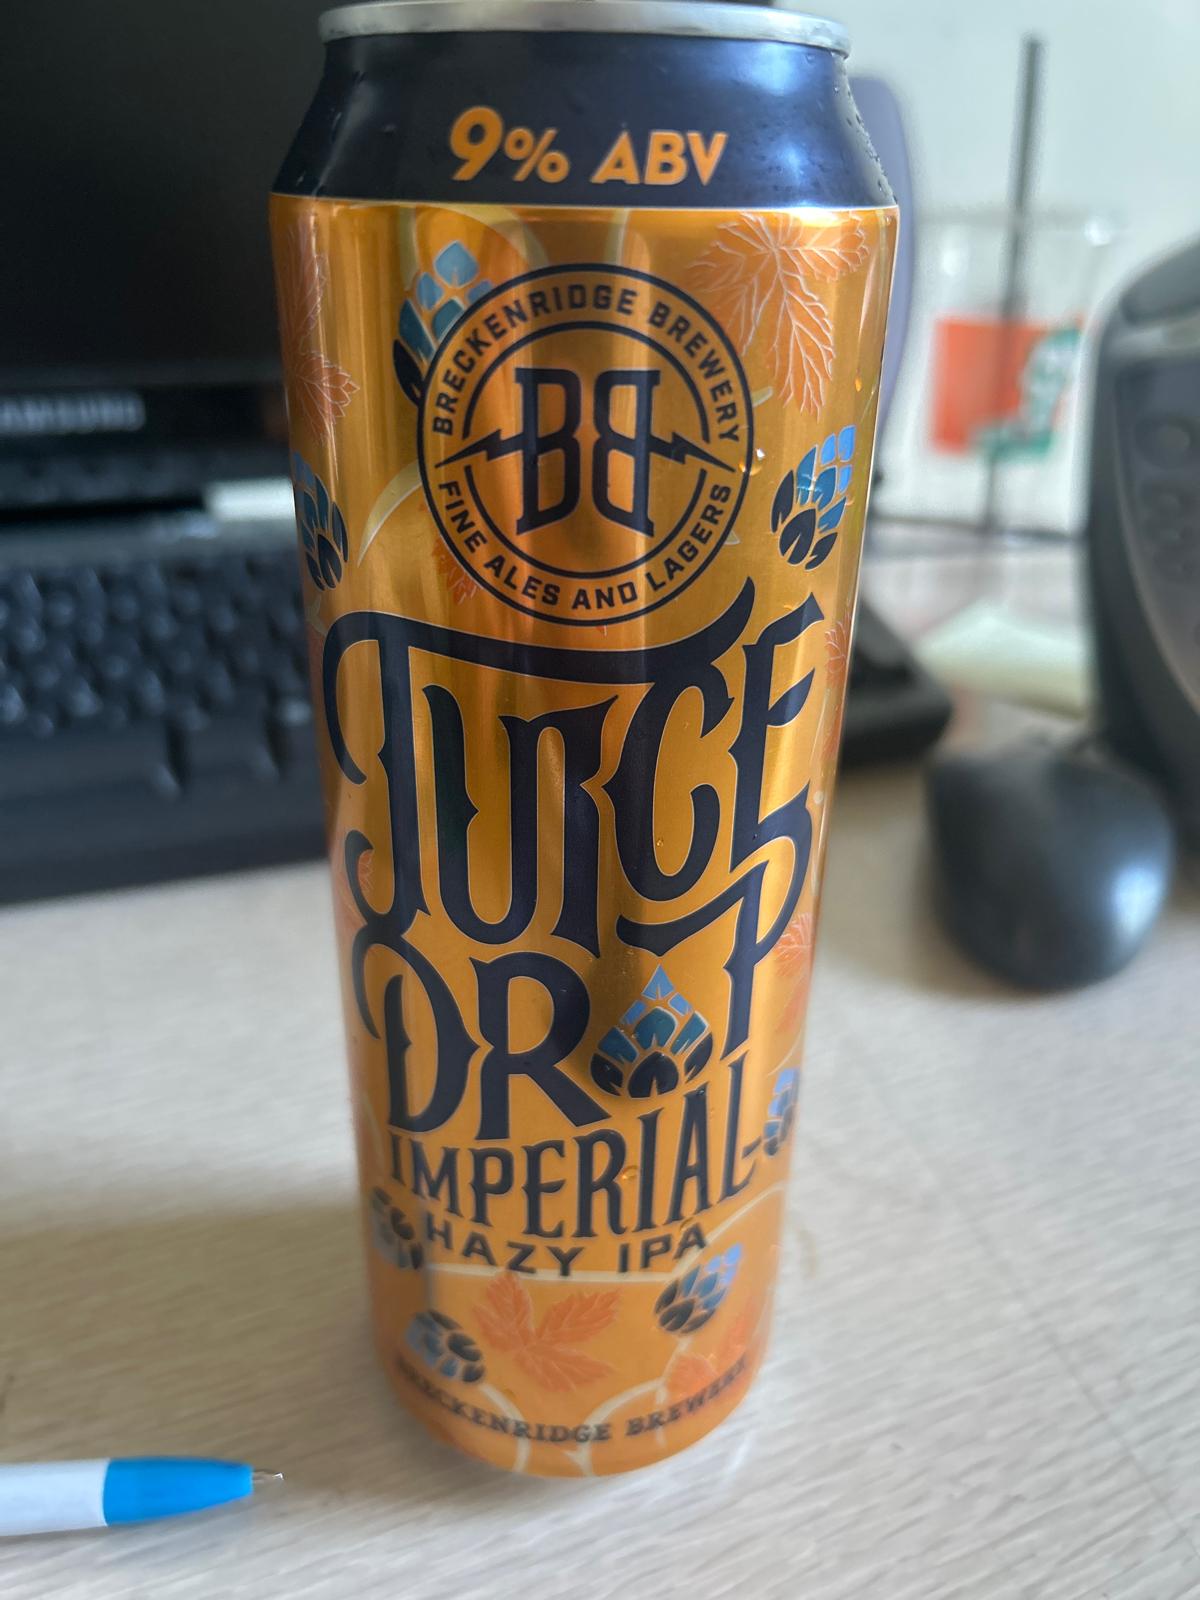 Juice Drop Imperial Hazy IPA